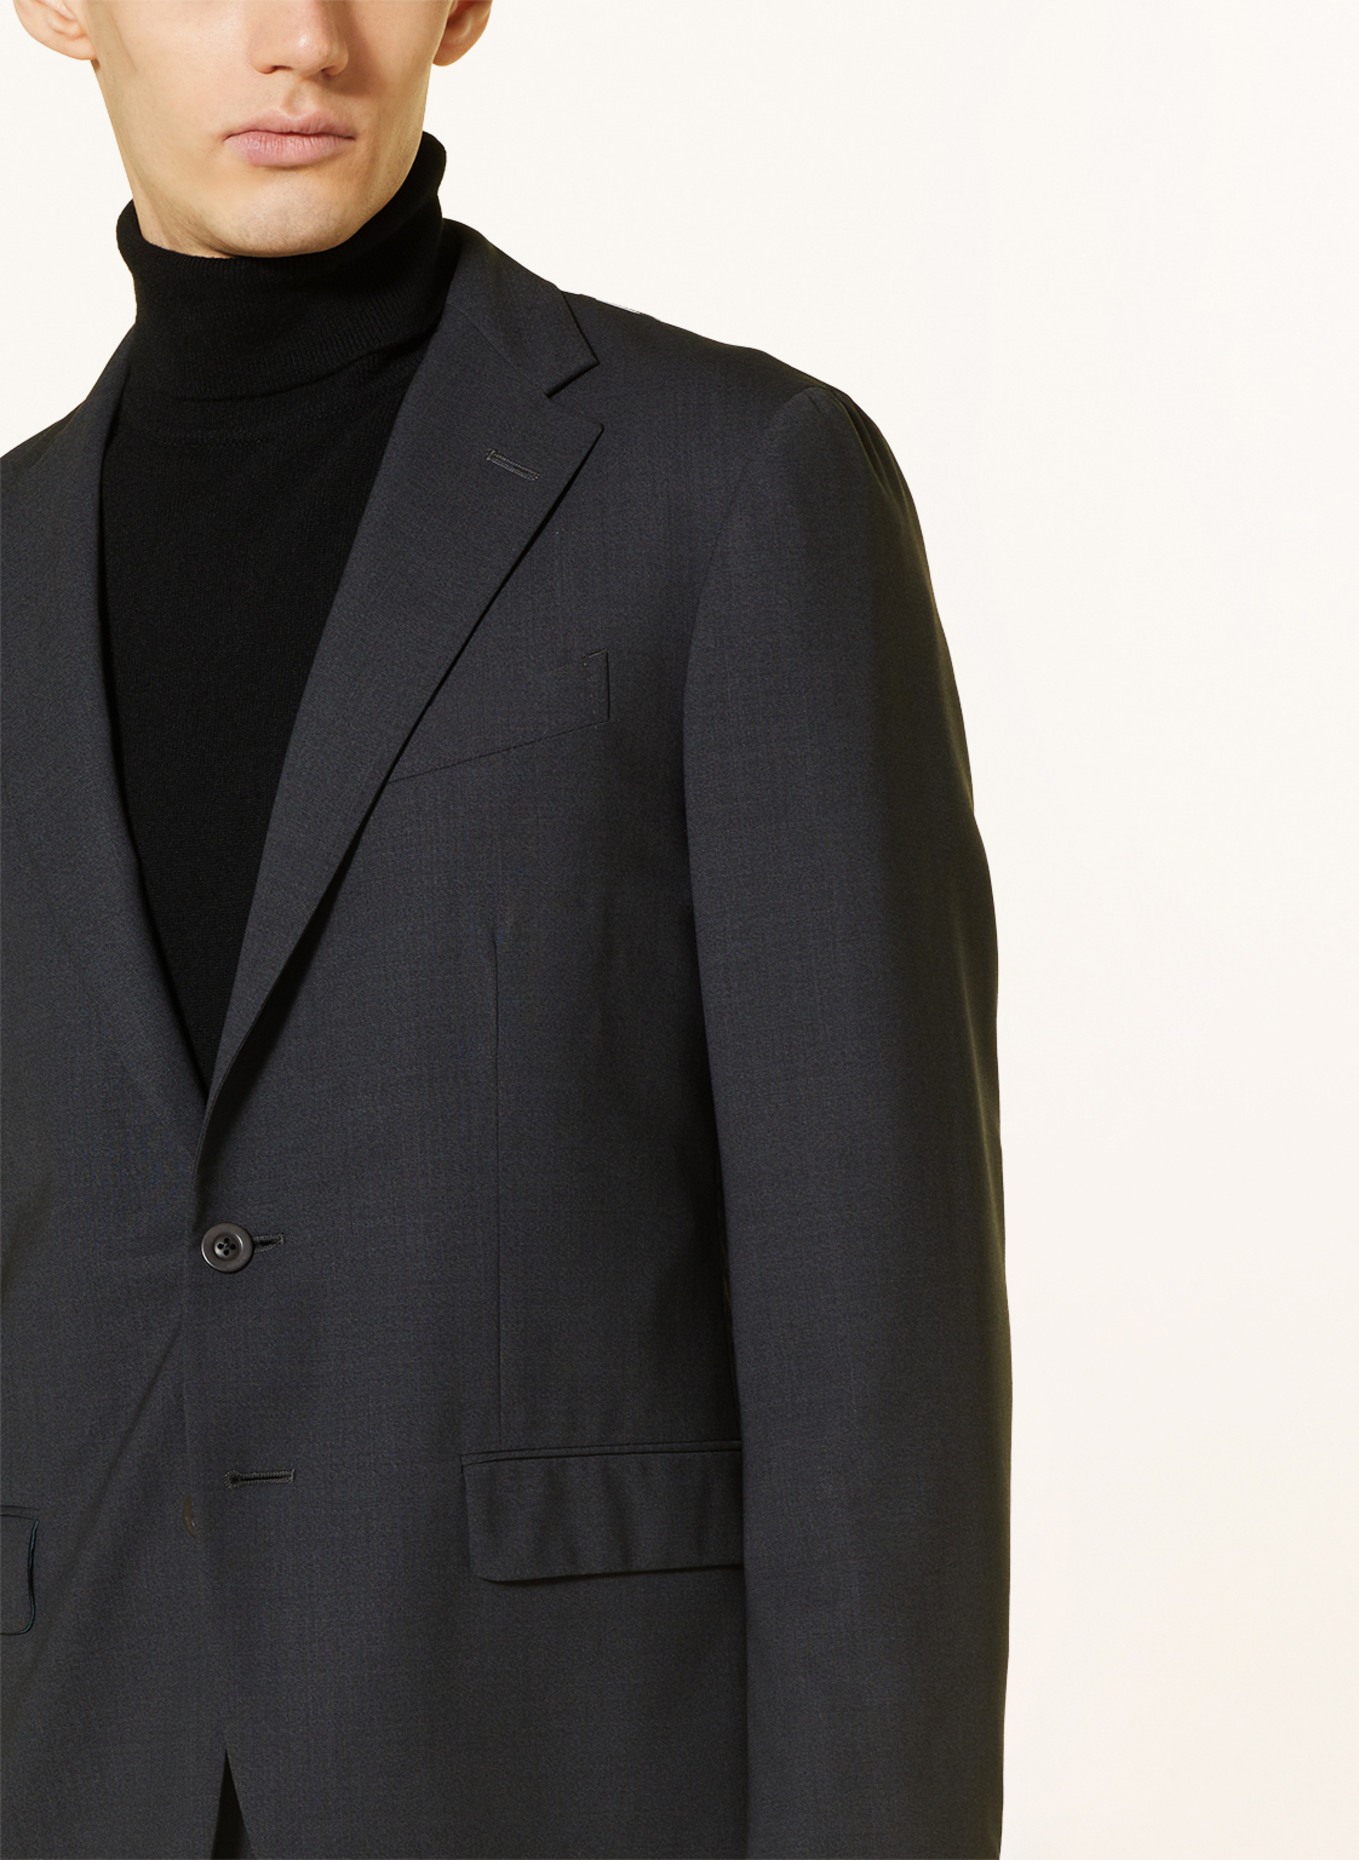 BOGLIOLI Suit jacket extra slim fit, Color: 890 Anthra (Image 6)